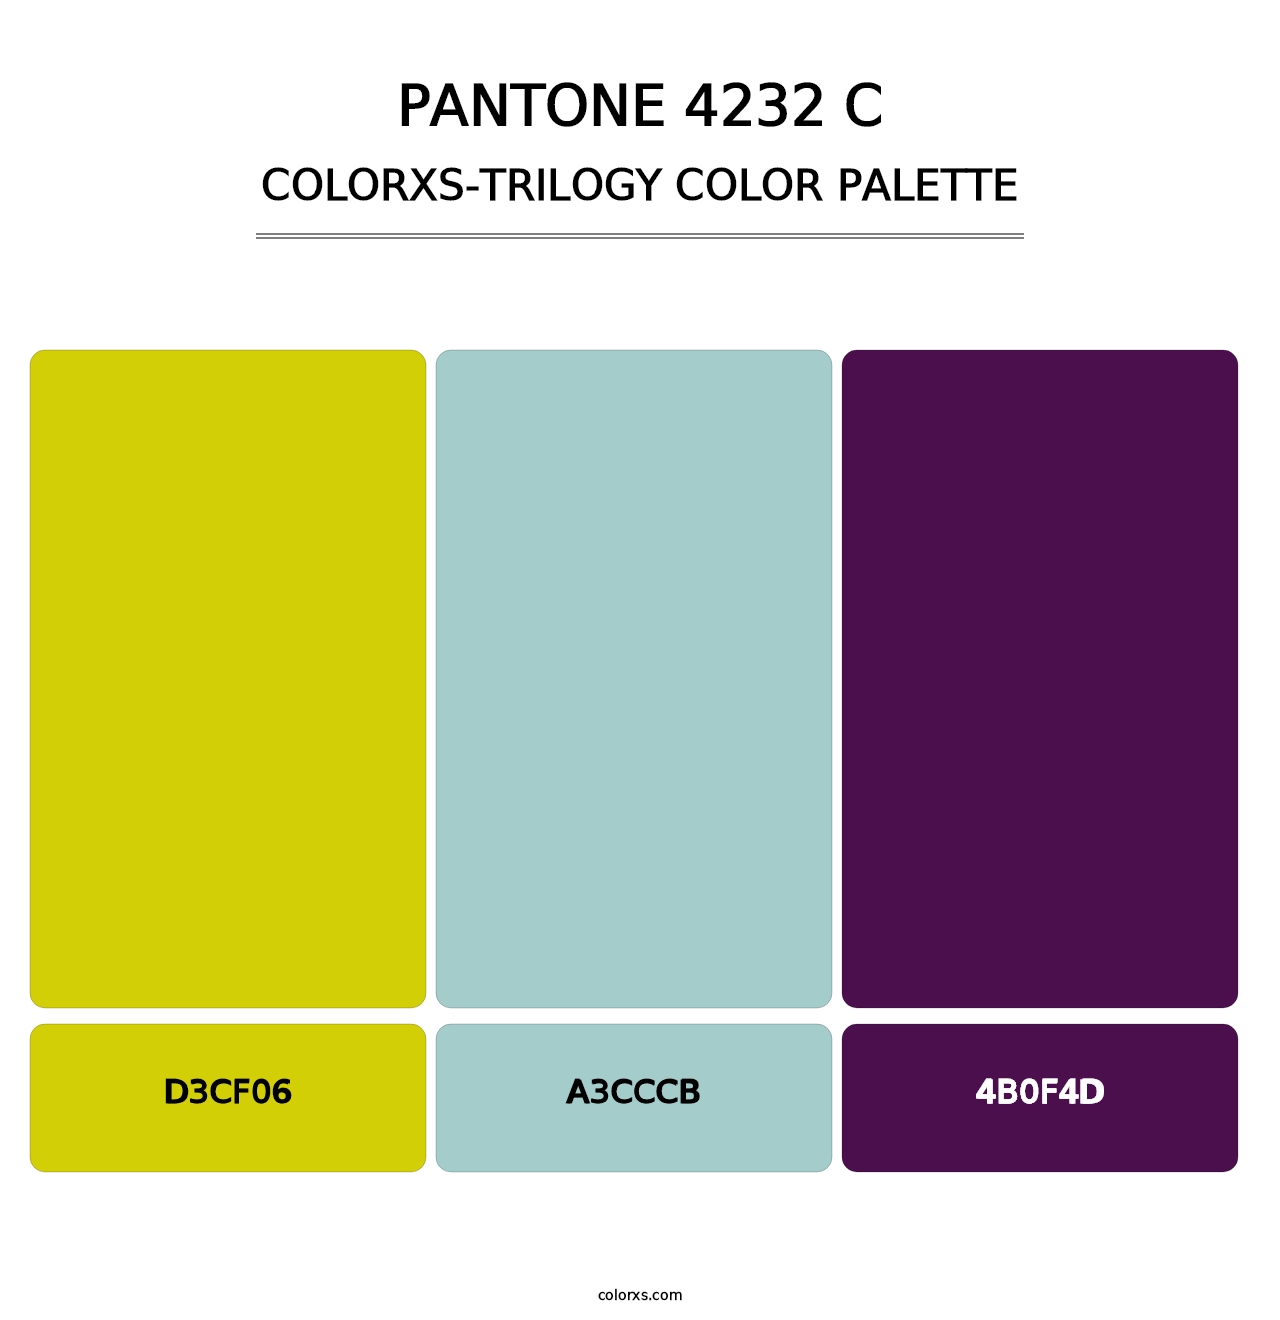 PANTONE 4232 C - Colorxs Trilogy Palette